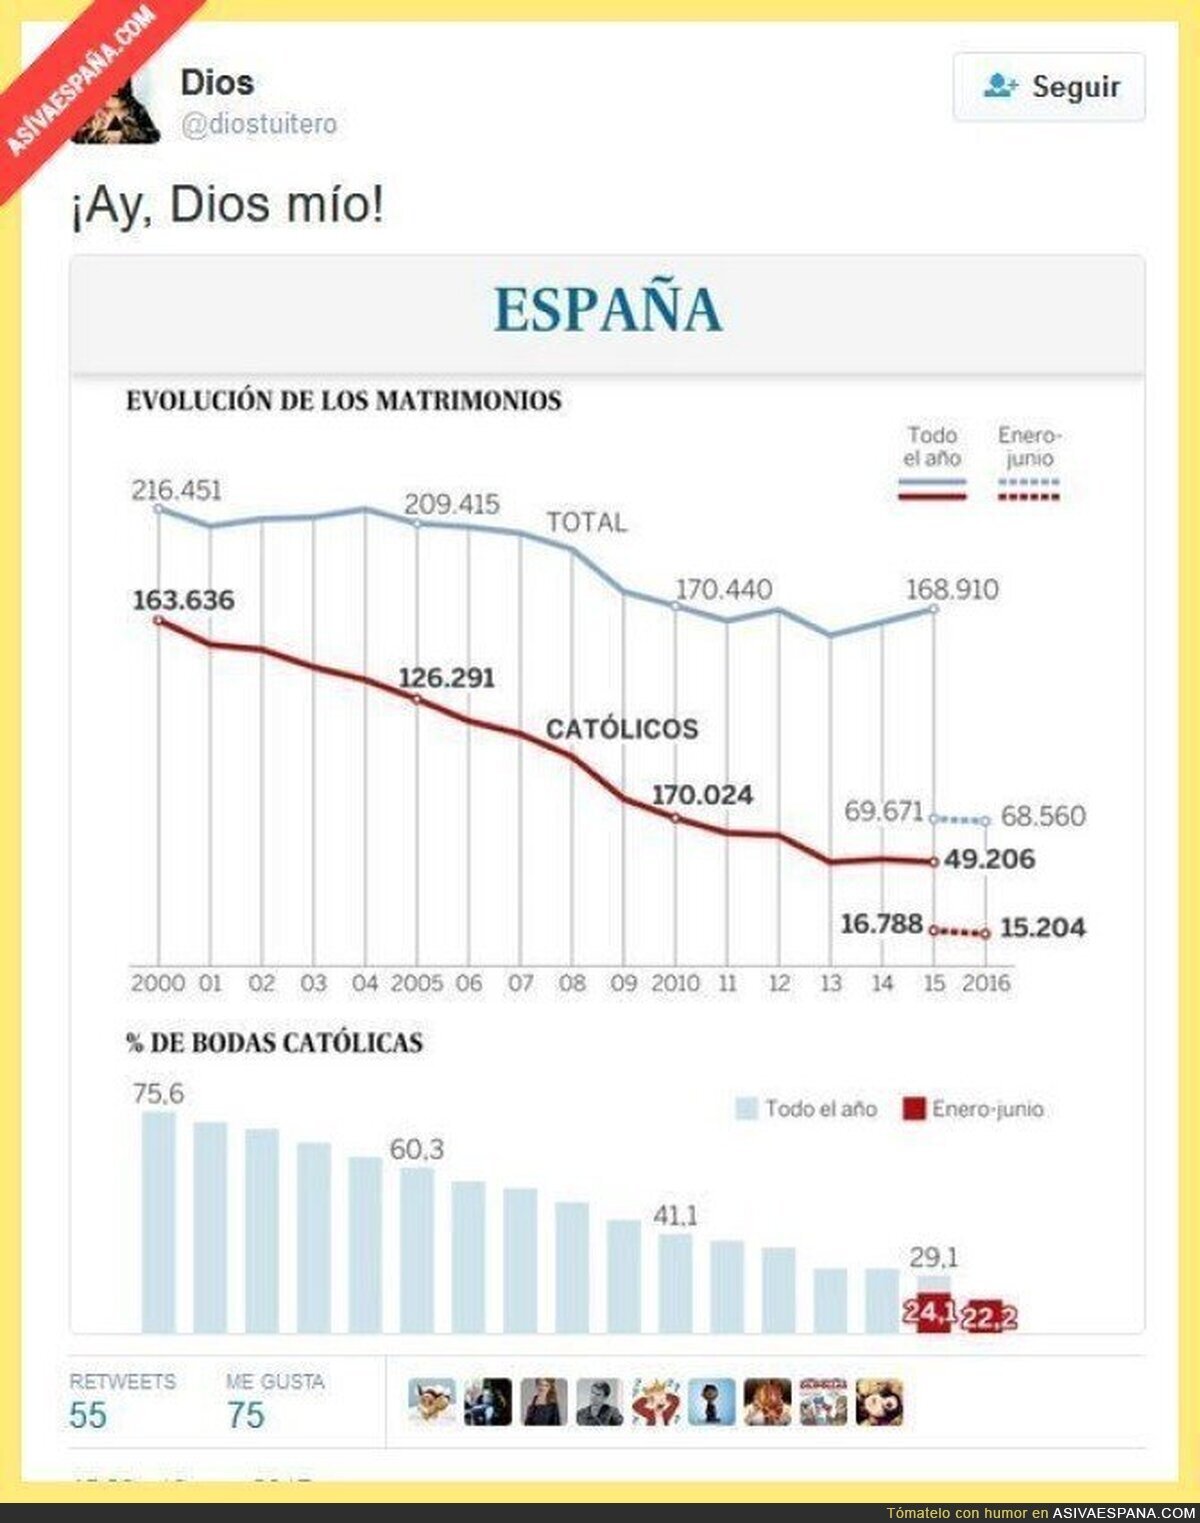 Los españoles apuestan mayoritariamente por vivir en pecado...